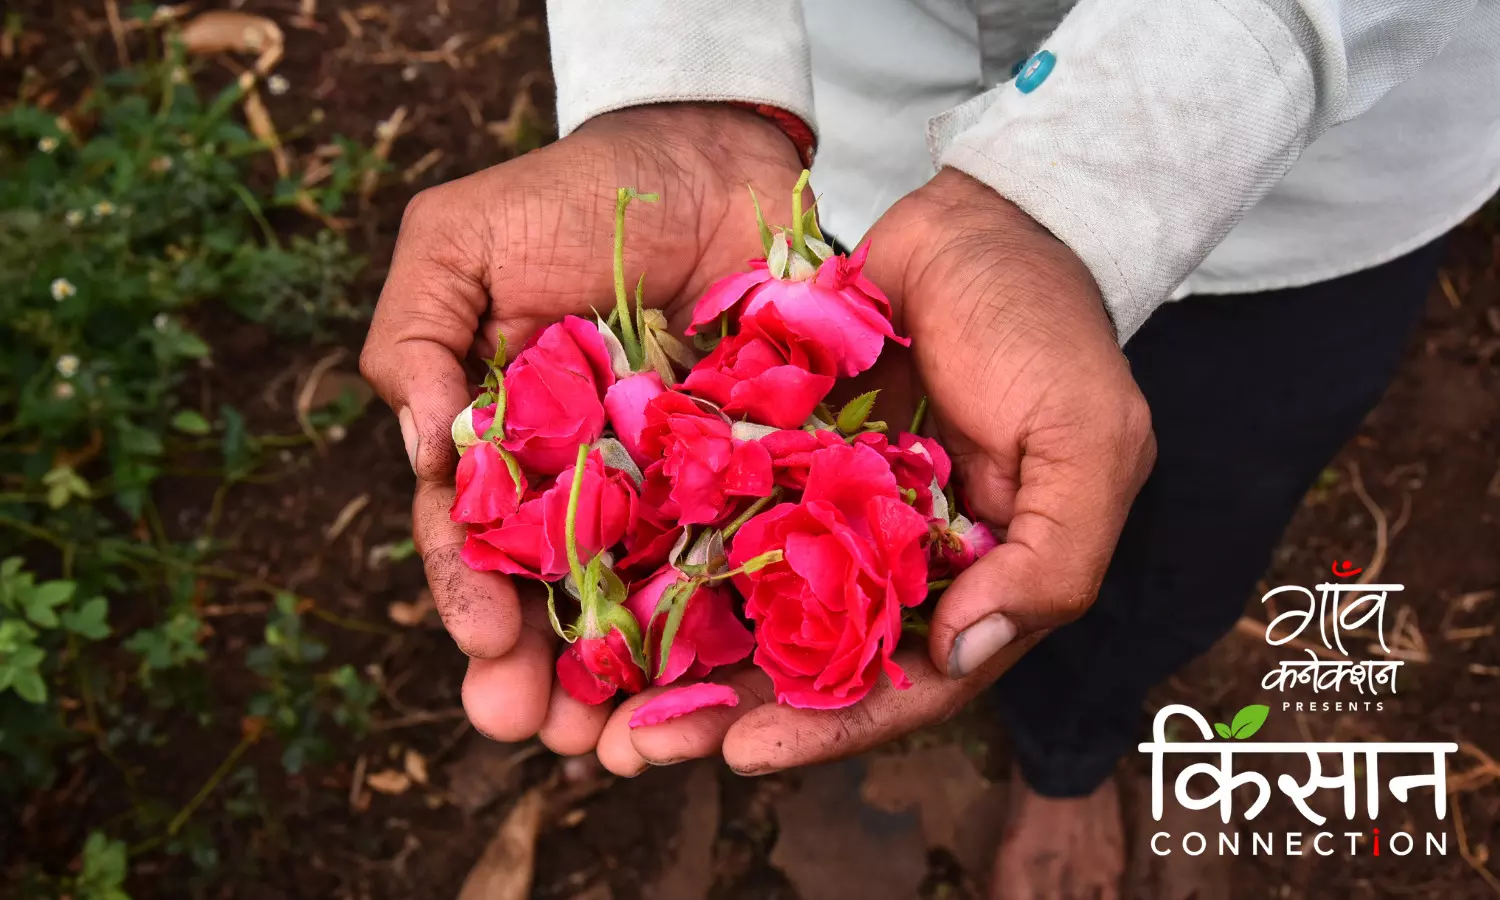 एक एफपीओ की मदद से सूखा प्रभावित सोलापुर में किसान करने लगे हैं गुलाब की खेती